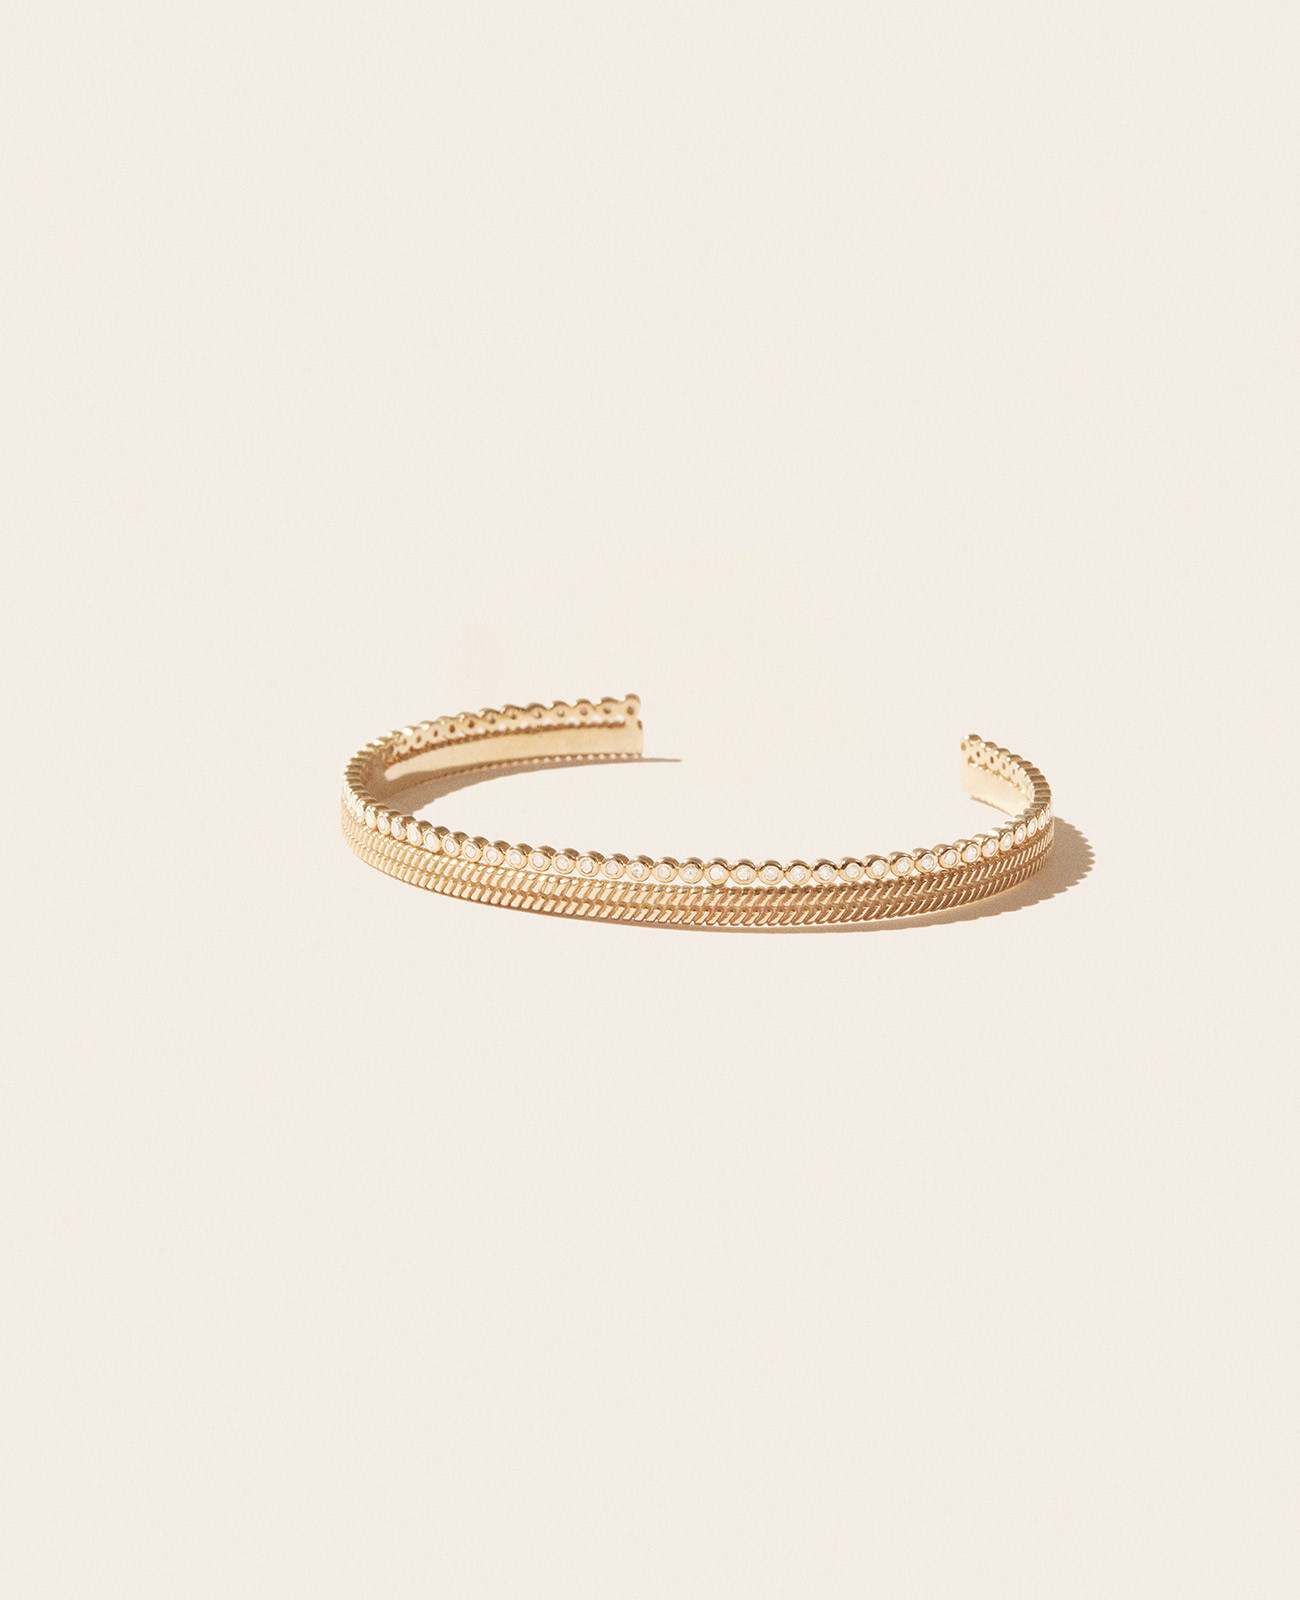 JIL N°2 bracelet pascale monvoisin jewelry paris